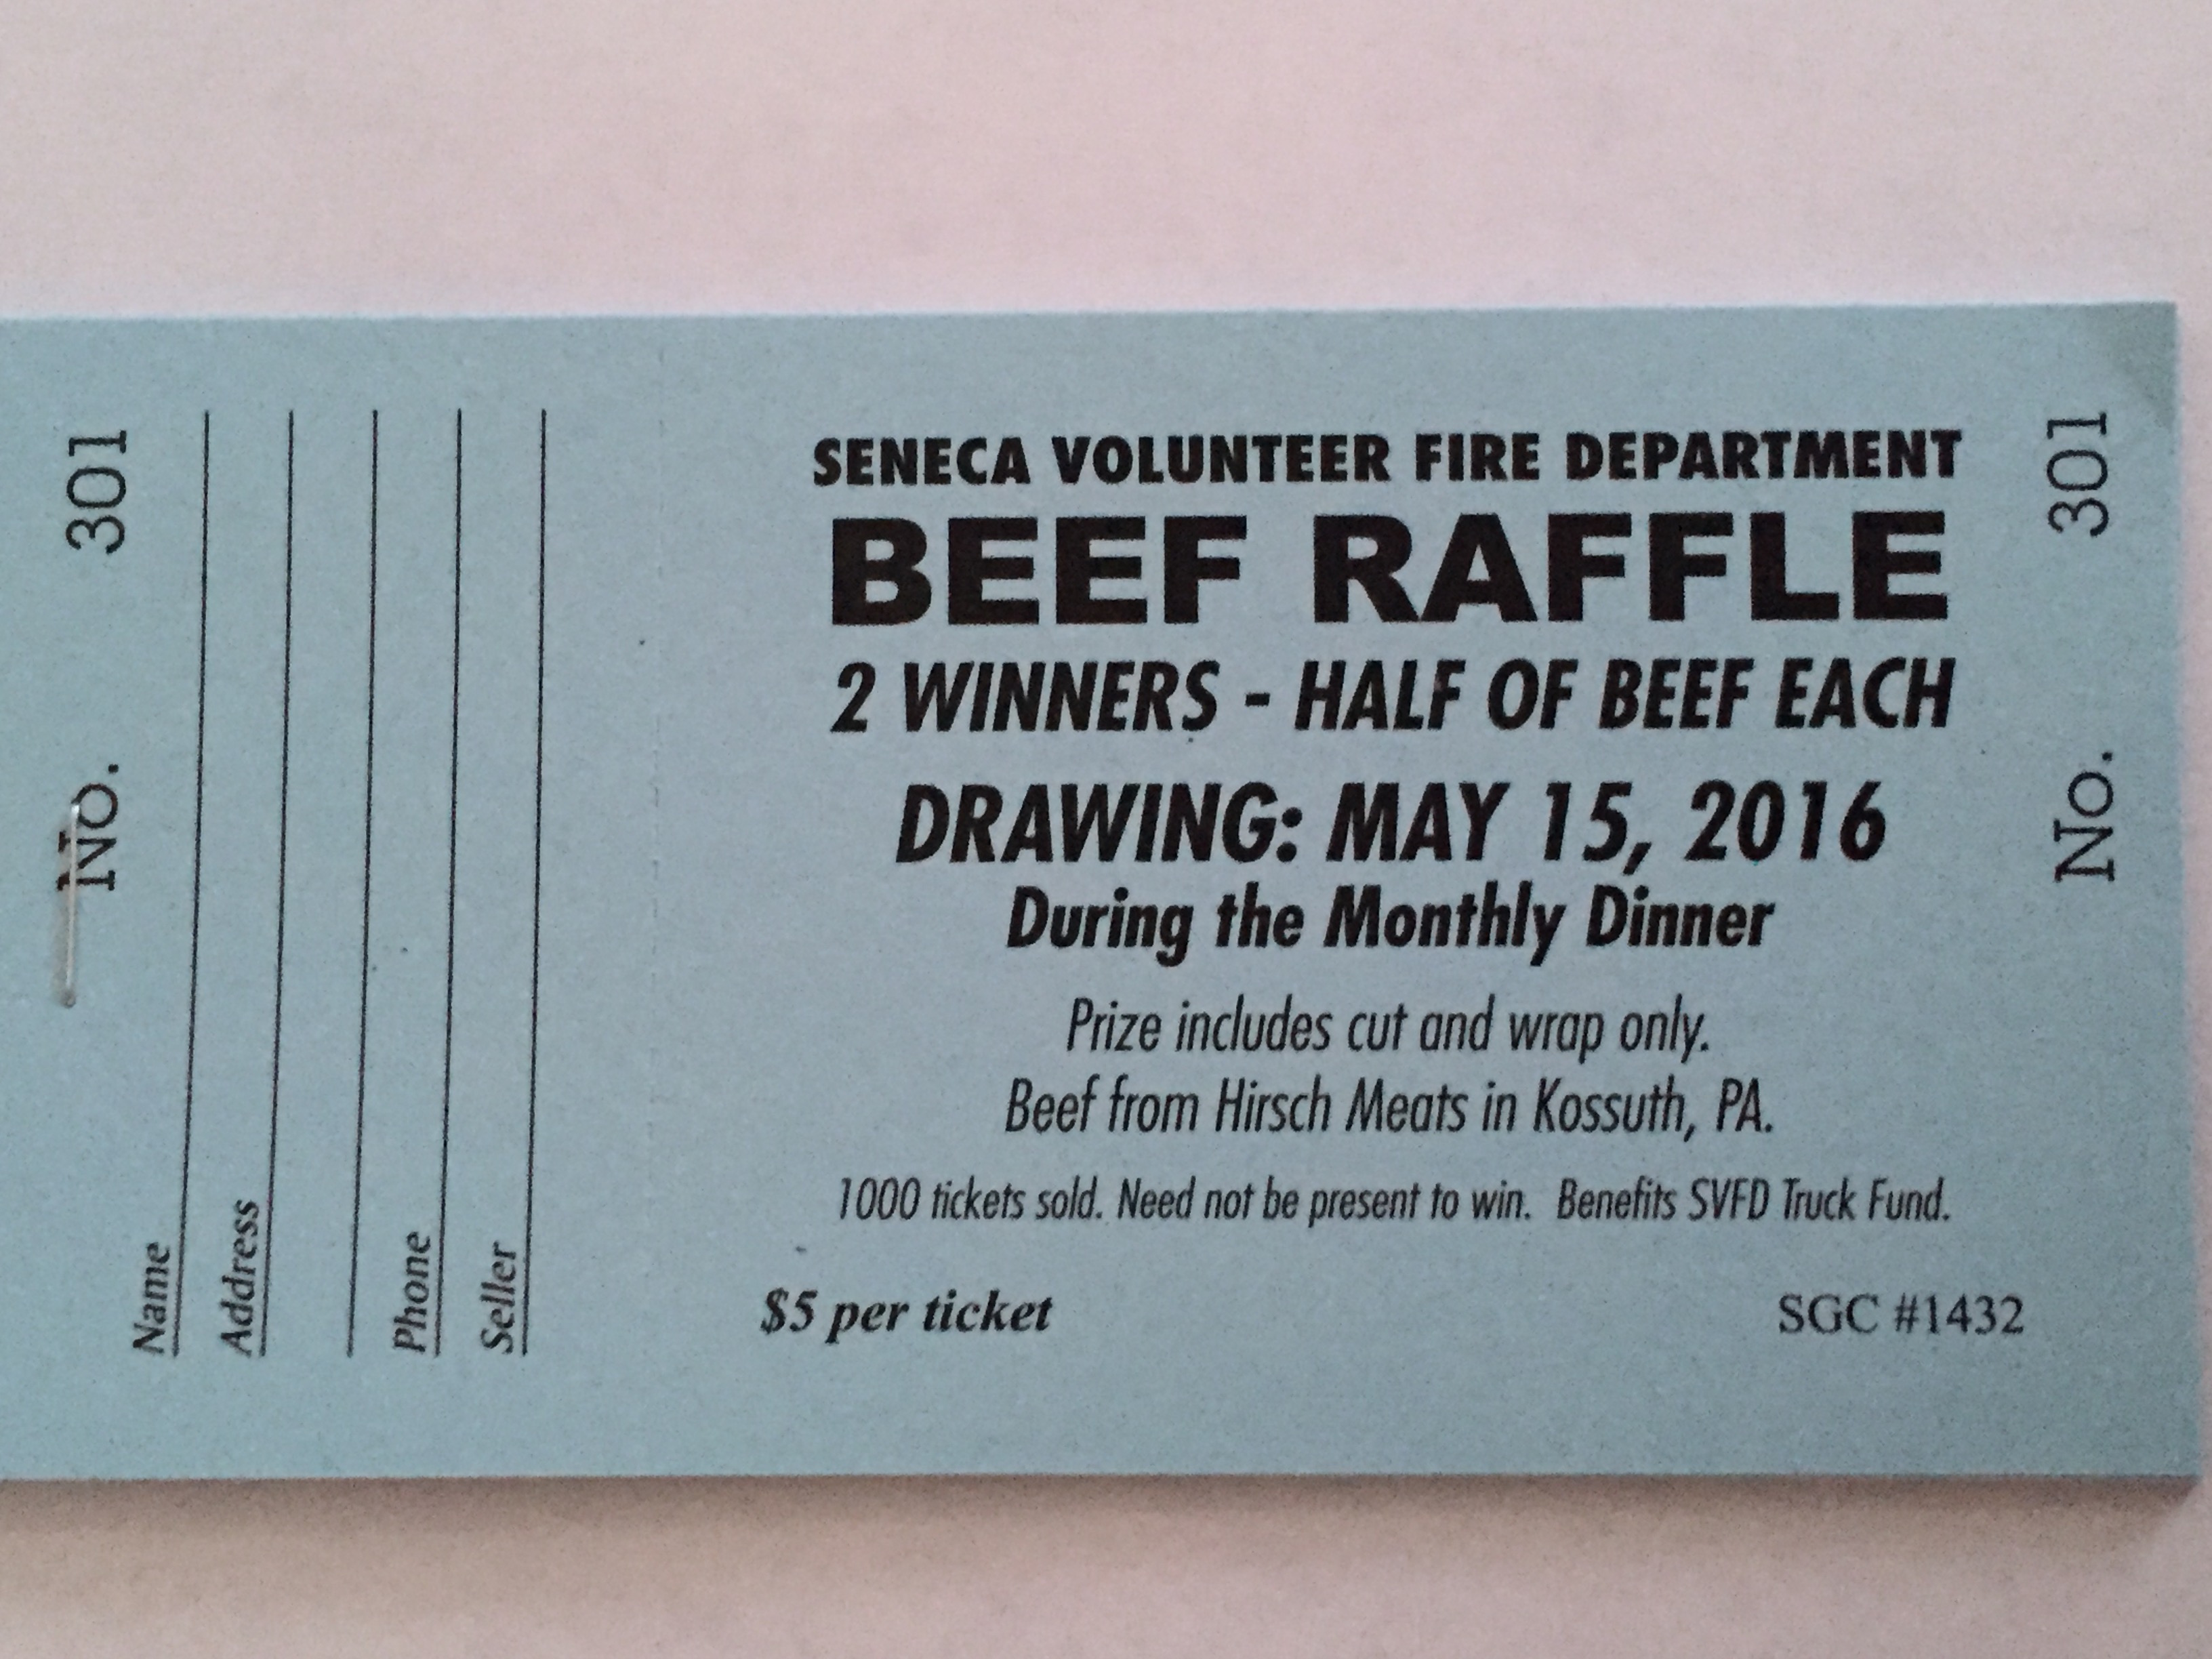 2016 Beef Raffle Tickets are now on sale Seneca Volunteer Fire Dept